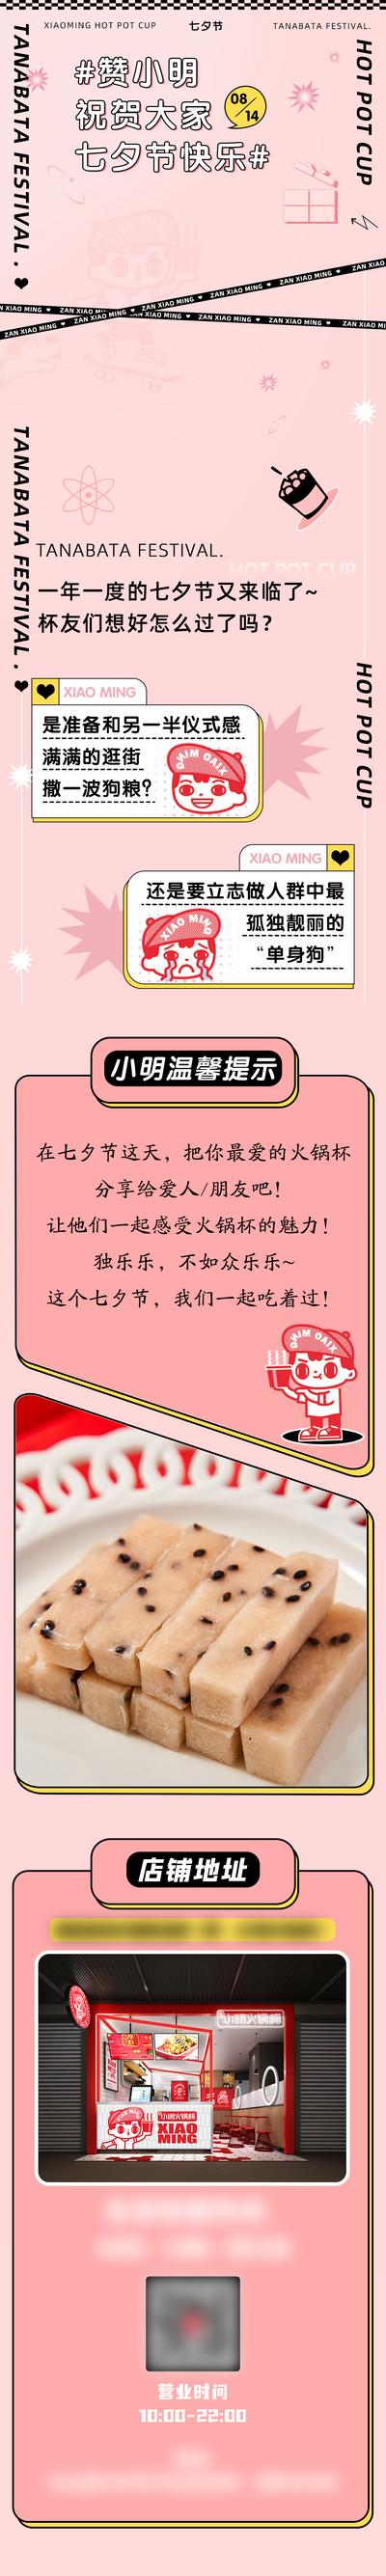 南门网 专题设计 长图 餐饮 火锅 七夕节 情人节 美食